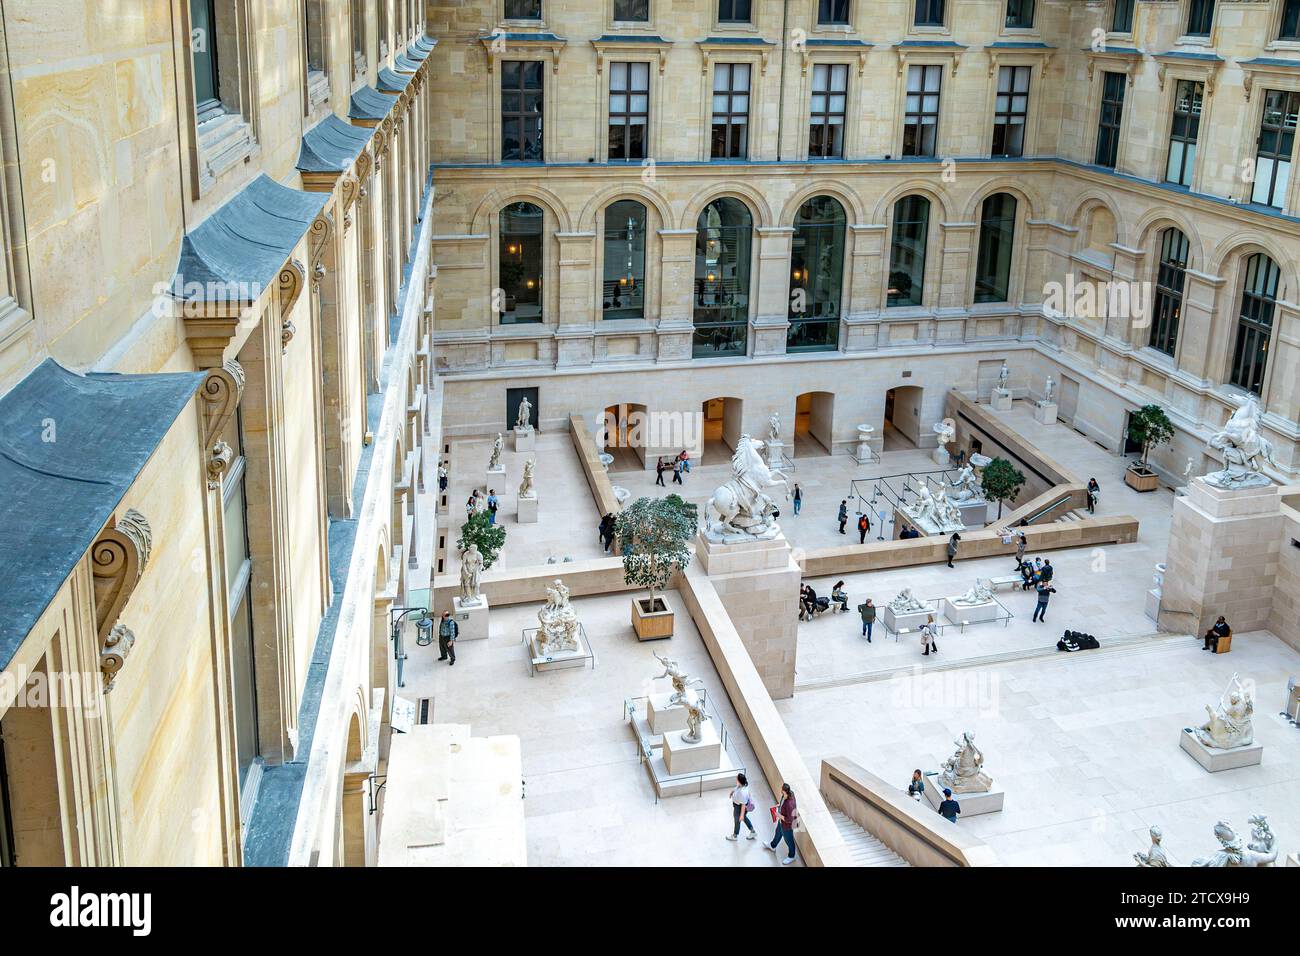 Sculptures dans la cour verrière connue sous le nom de Cour Marly dans l'aile Richelieu du musée du Louvre, Paris, France Banque D'Images